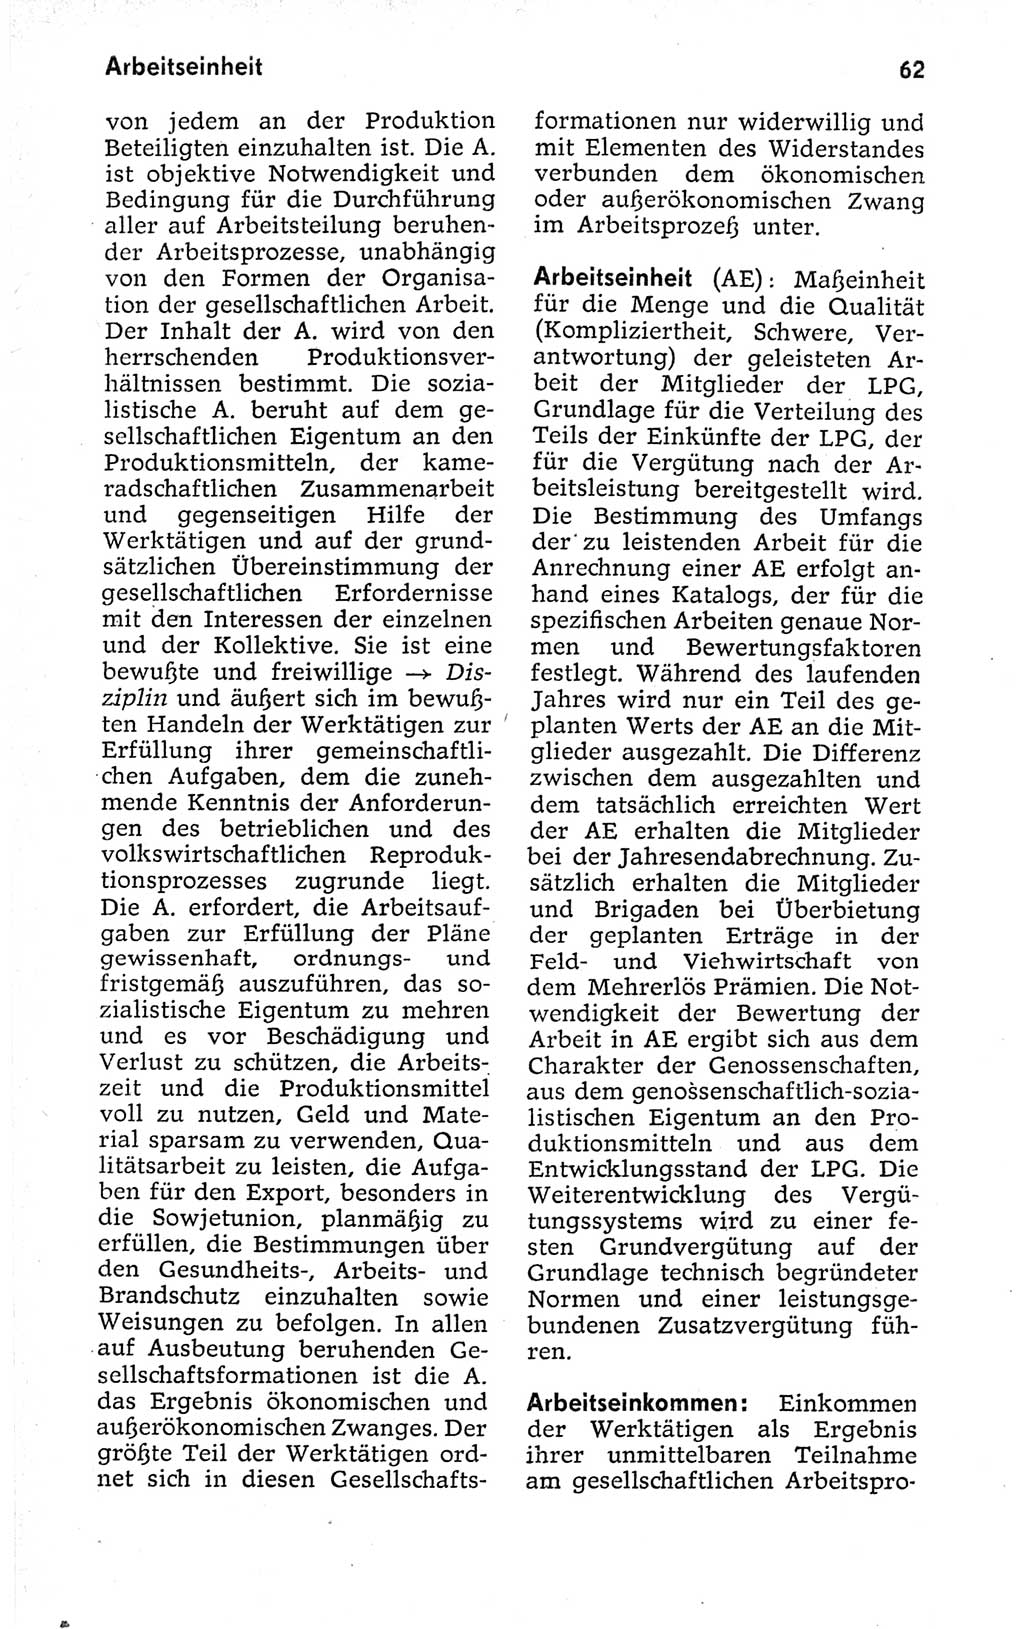 Kleines politisches Wörterbuch [Deutsche Demokratische Republik (DDR)] 1973, Seite 62 (Kl. pol. Wb. DDR 1973, S. 62)